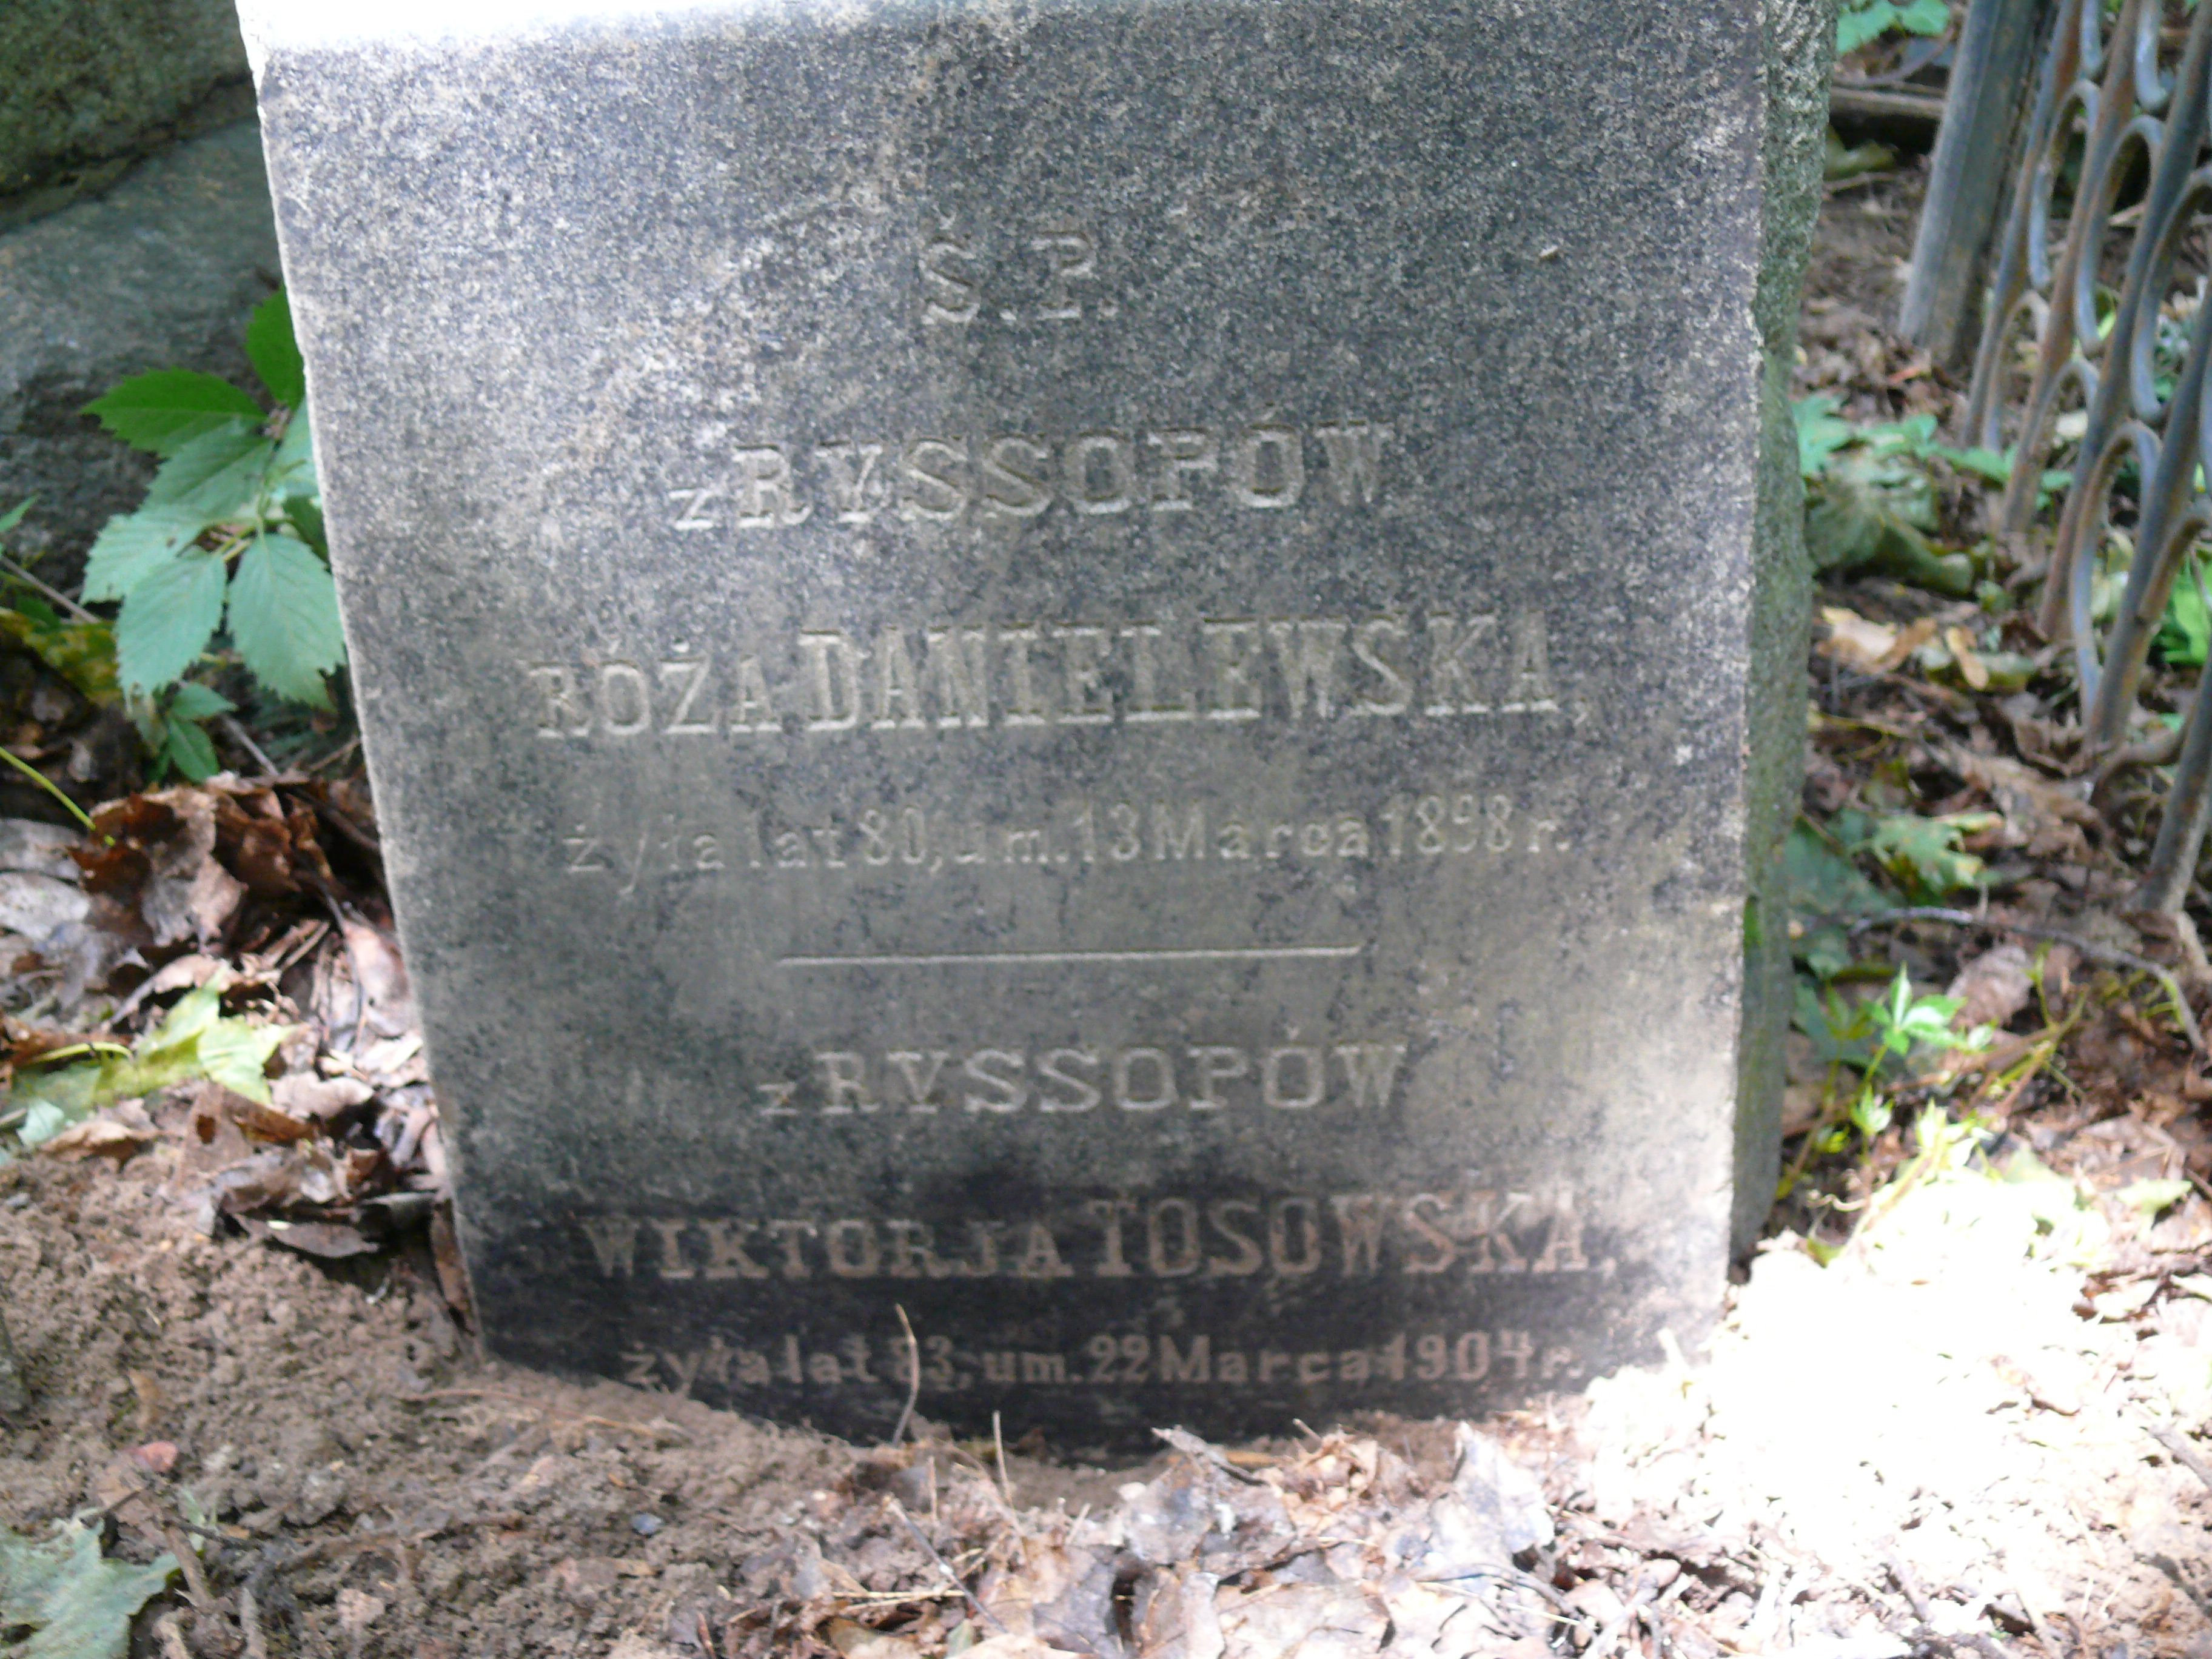 Fragment of the gravestone of Róża Danielewska and Viktoria Tosovska, Baikalkova cemetery, Kyiv, as of 2021